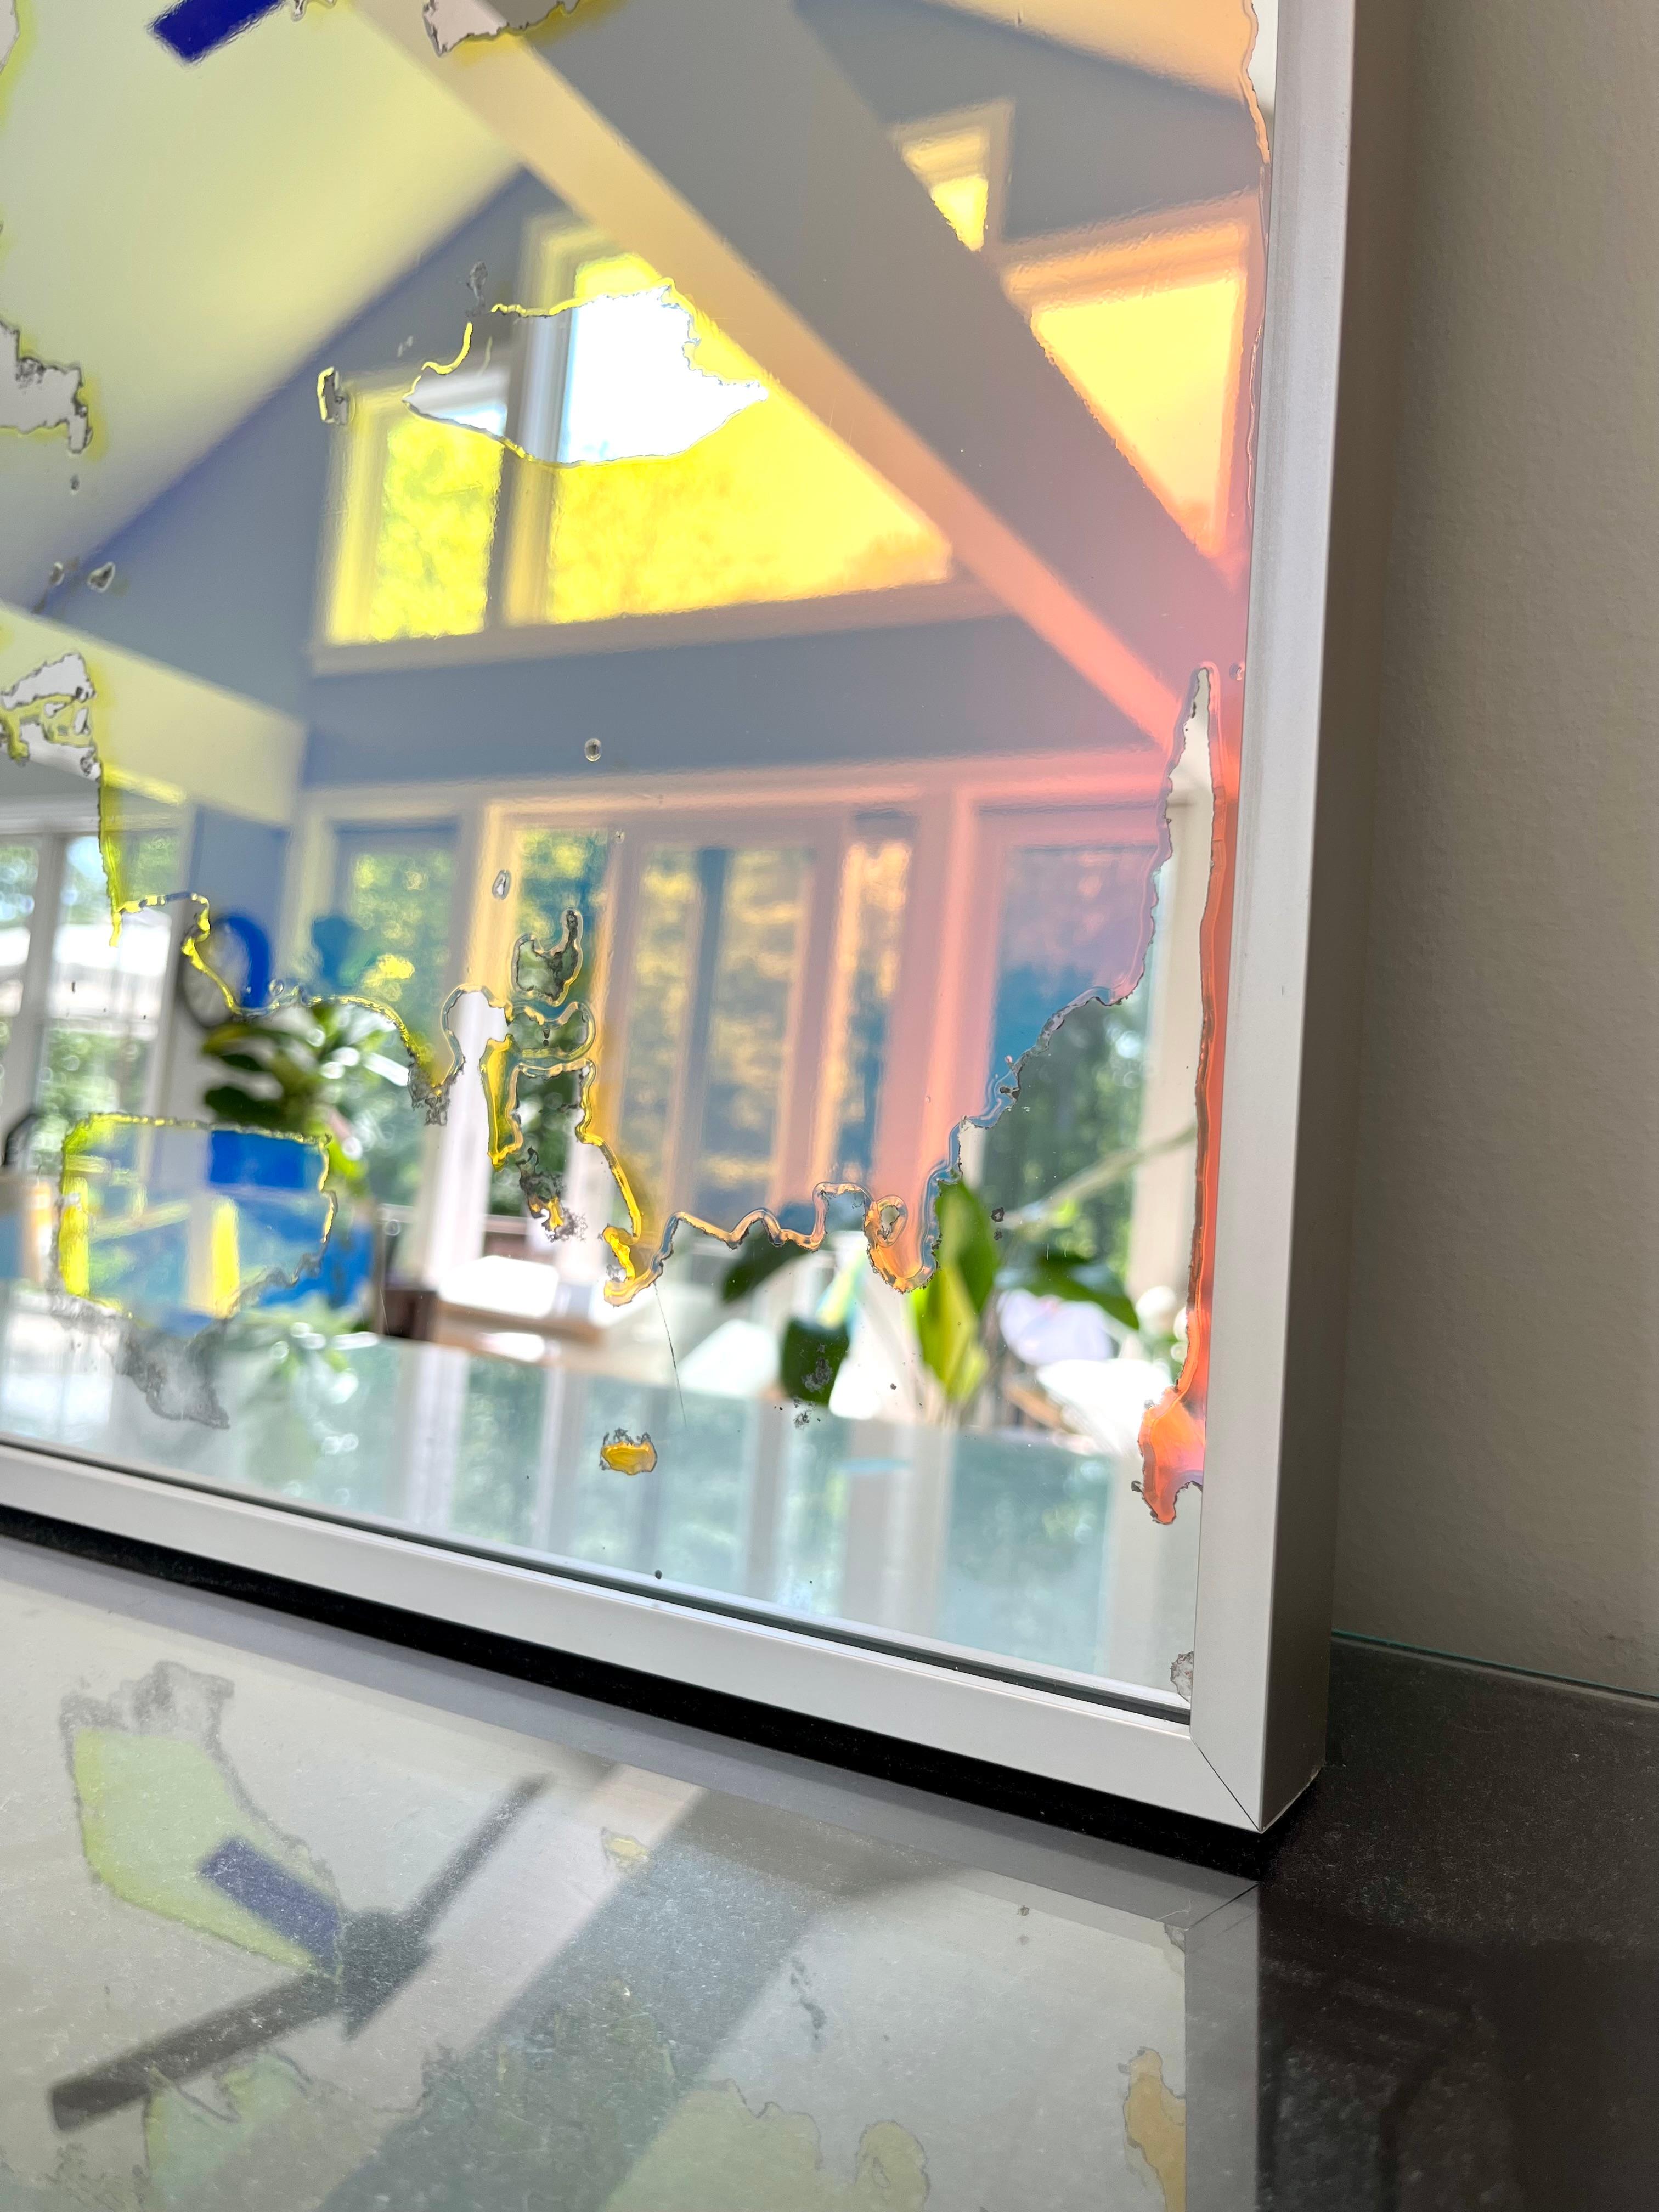 Ce miroir d'art abstrait d'Alina B est réalisé avec un film dichroïque sur miroir, et est encadré dans un cadre aux tons champagne. Le film sur le miroir permet à celui-ci, ainsi qu'à l'espace qu'il reflète, de sembler changer de couleur en fonction